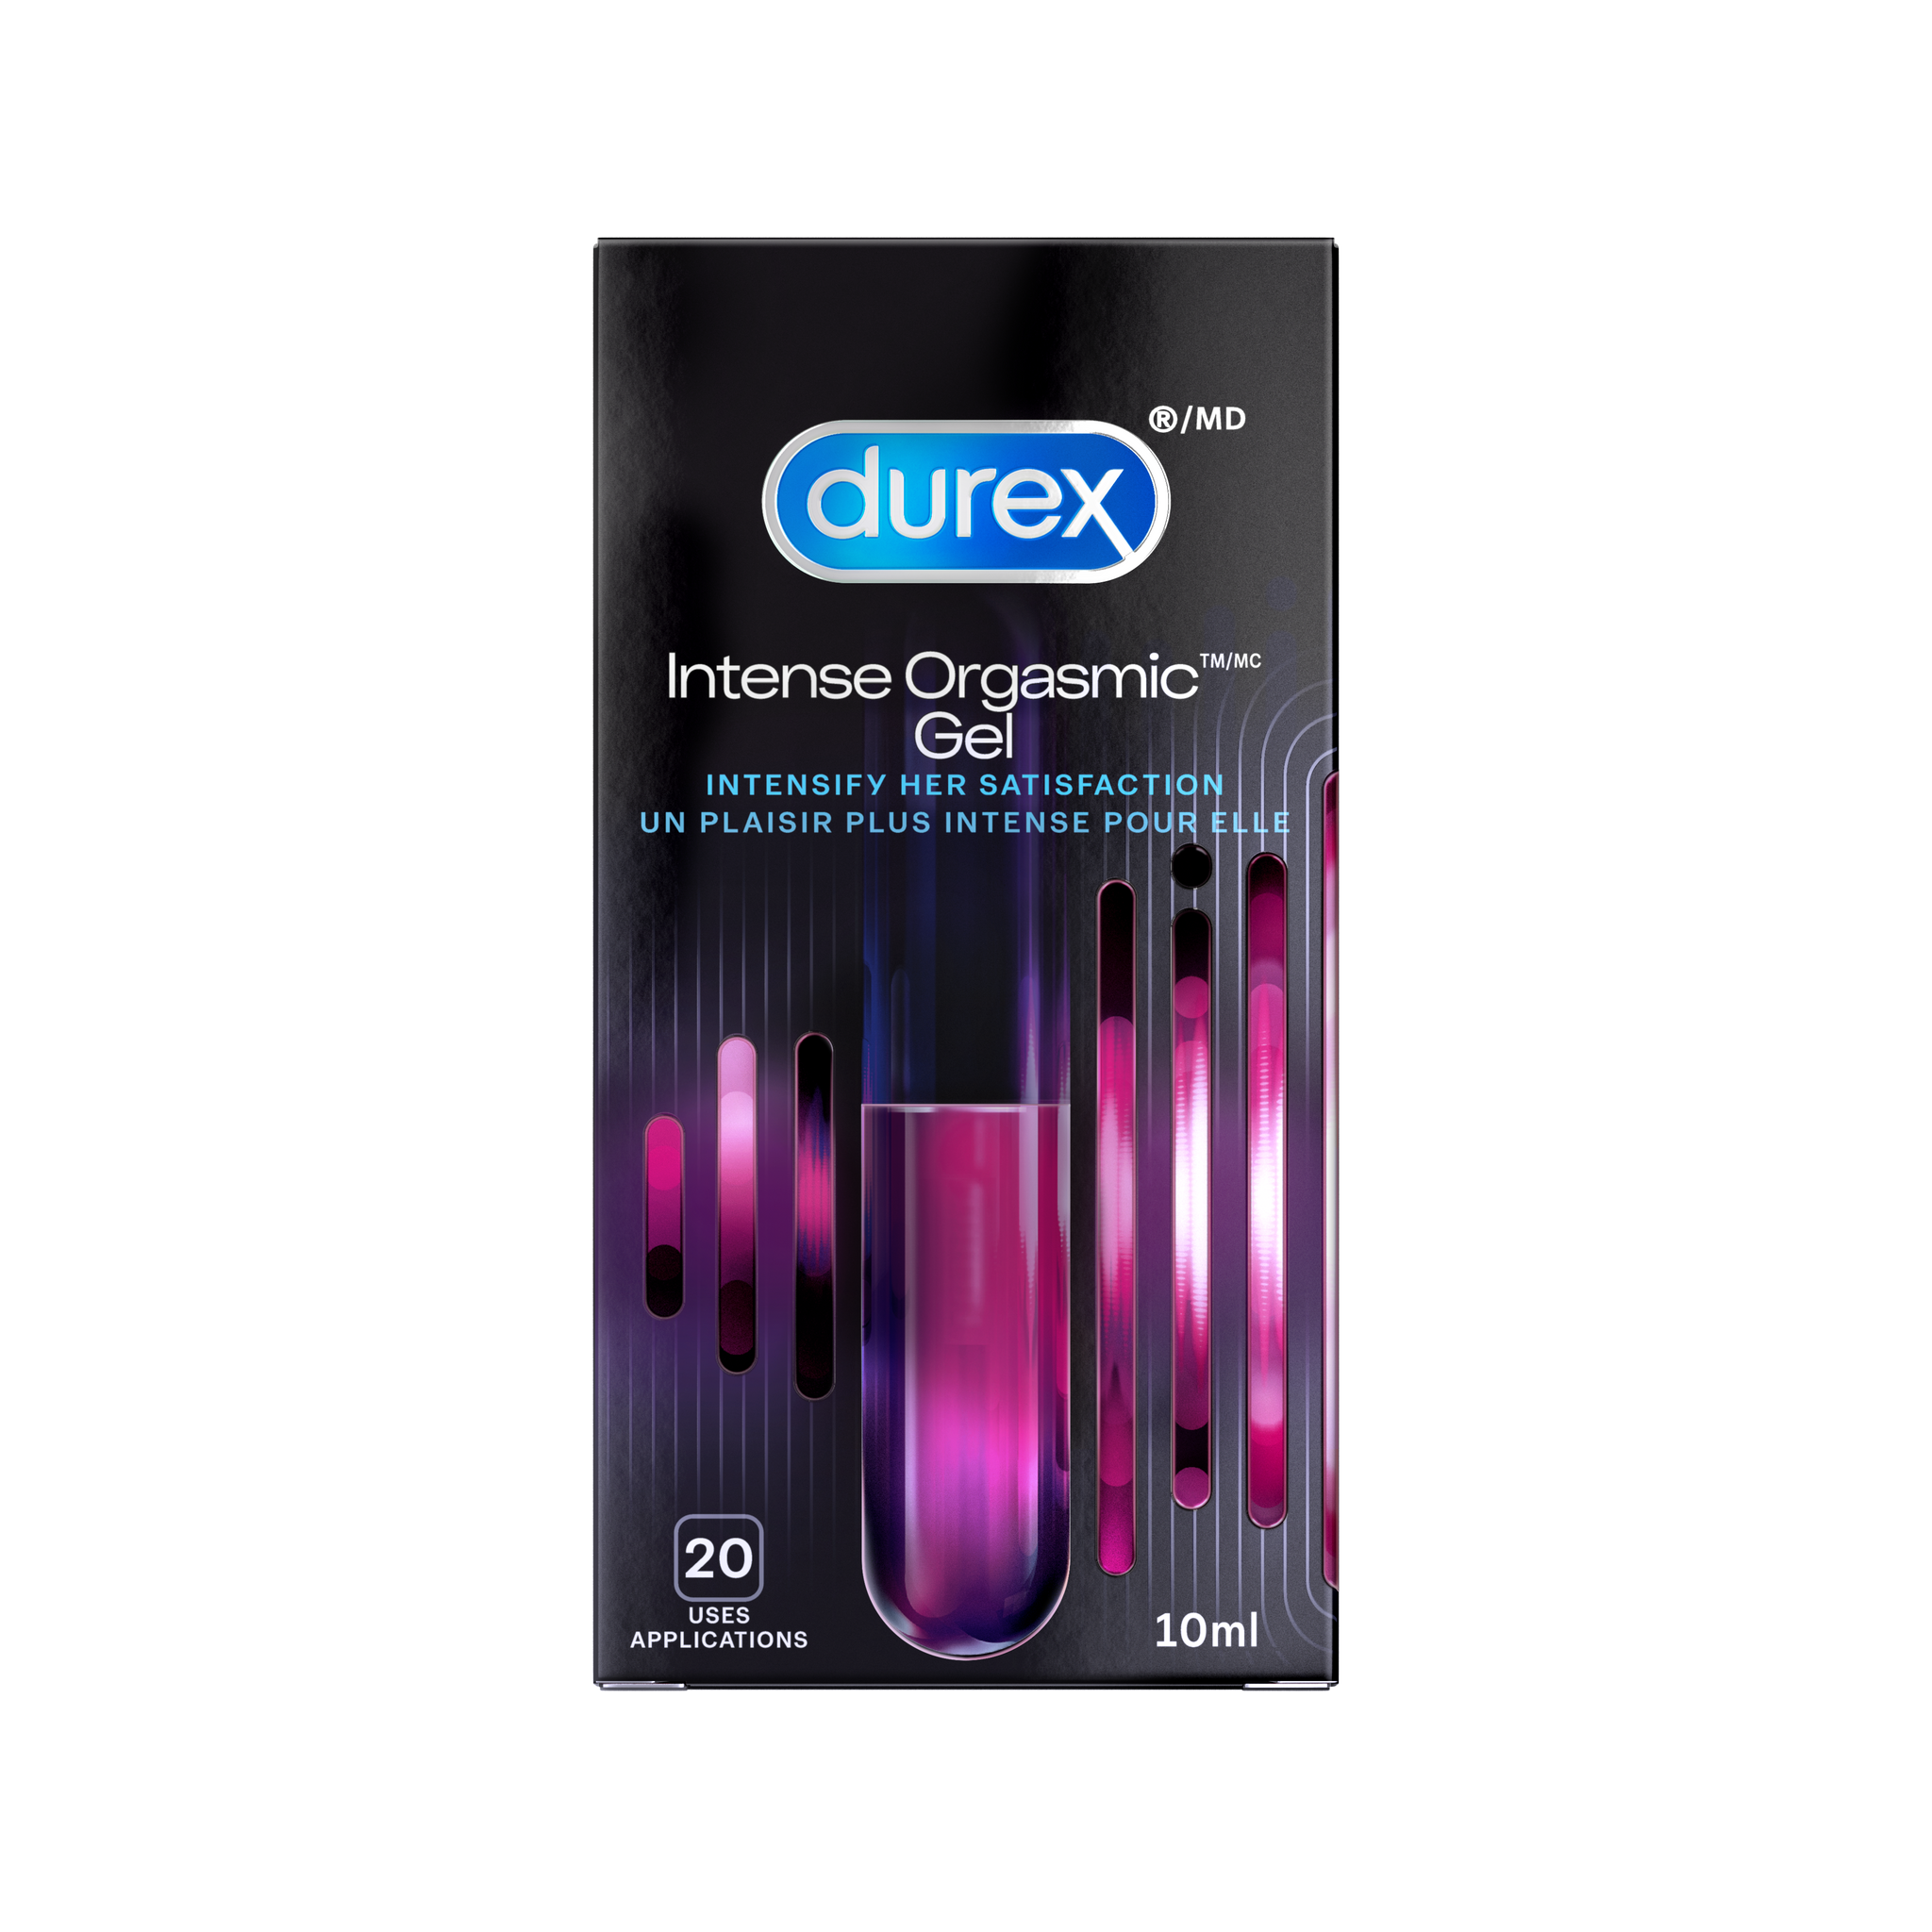 packshot of Packaged Durex Intense Orgasmic Gel.